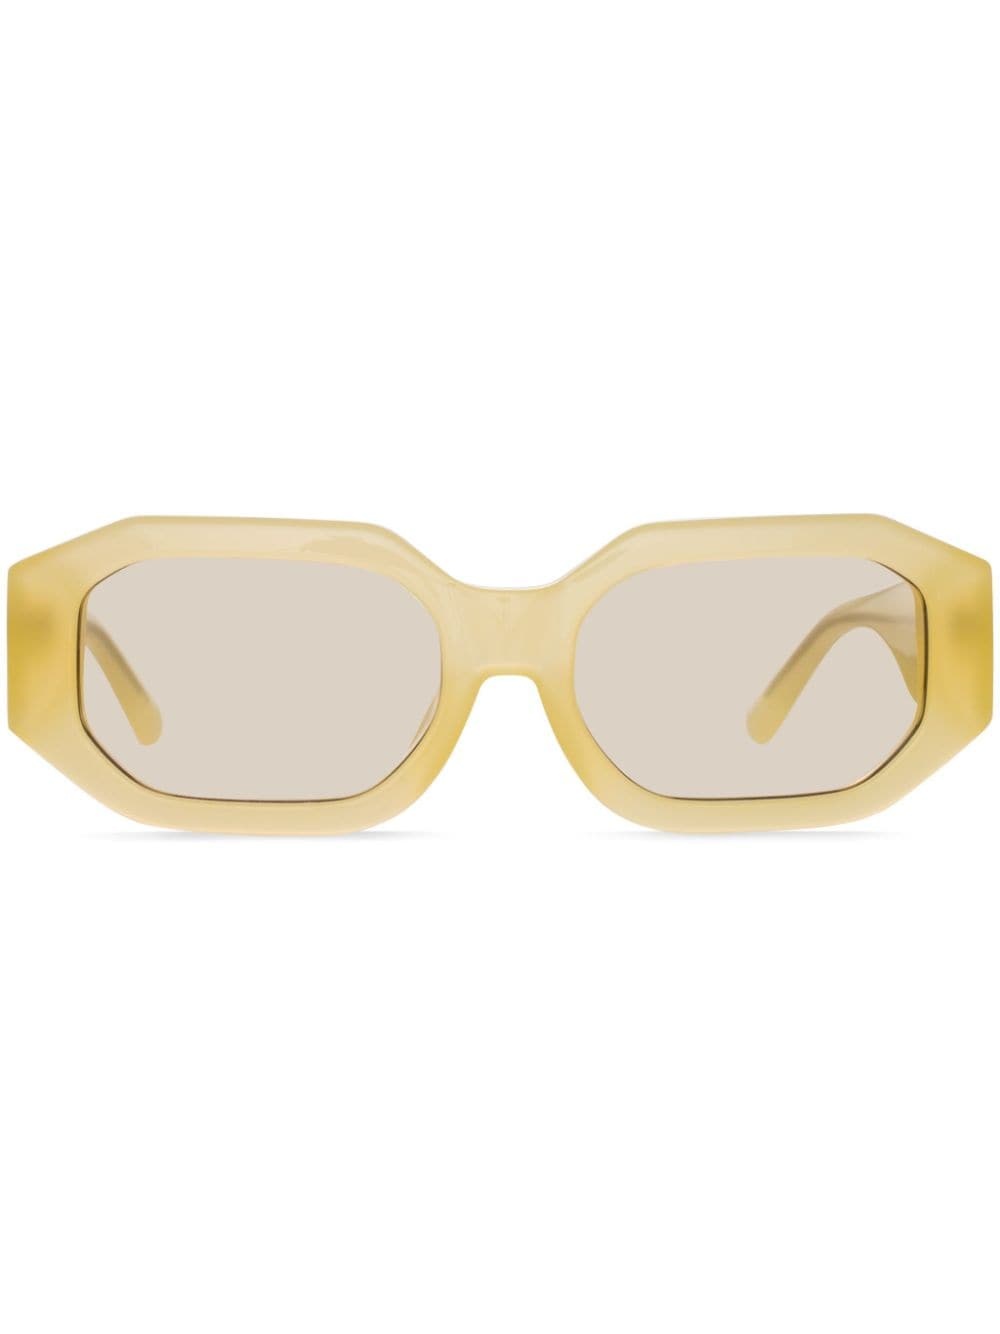 Blake oval-lenses sunglasses - 1